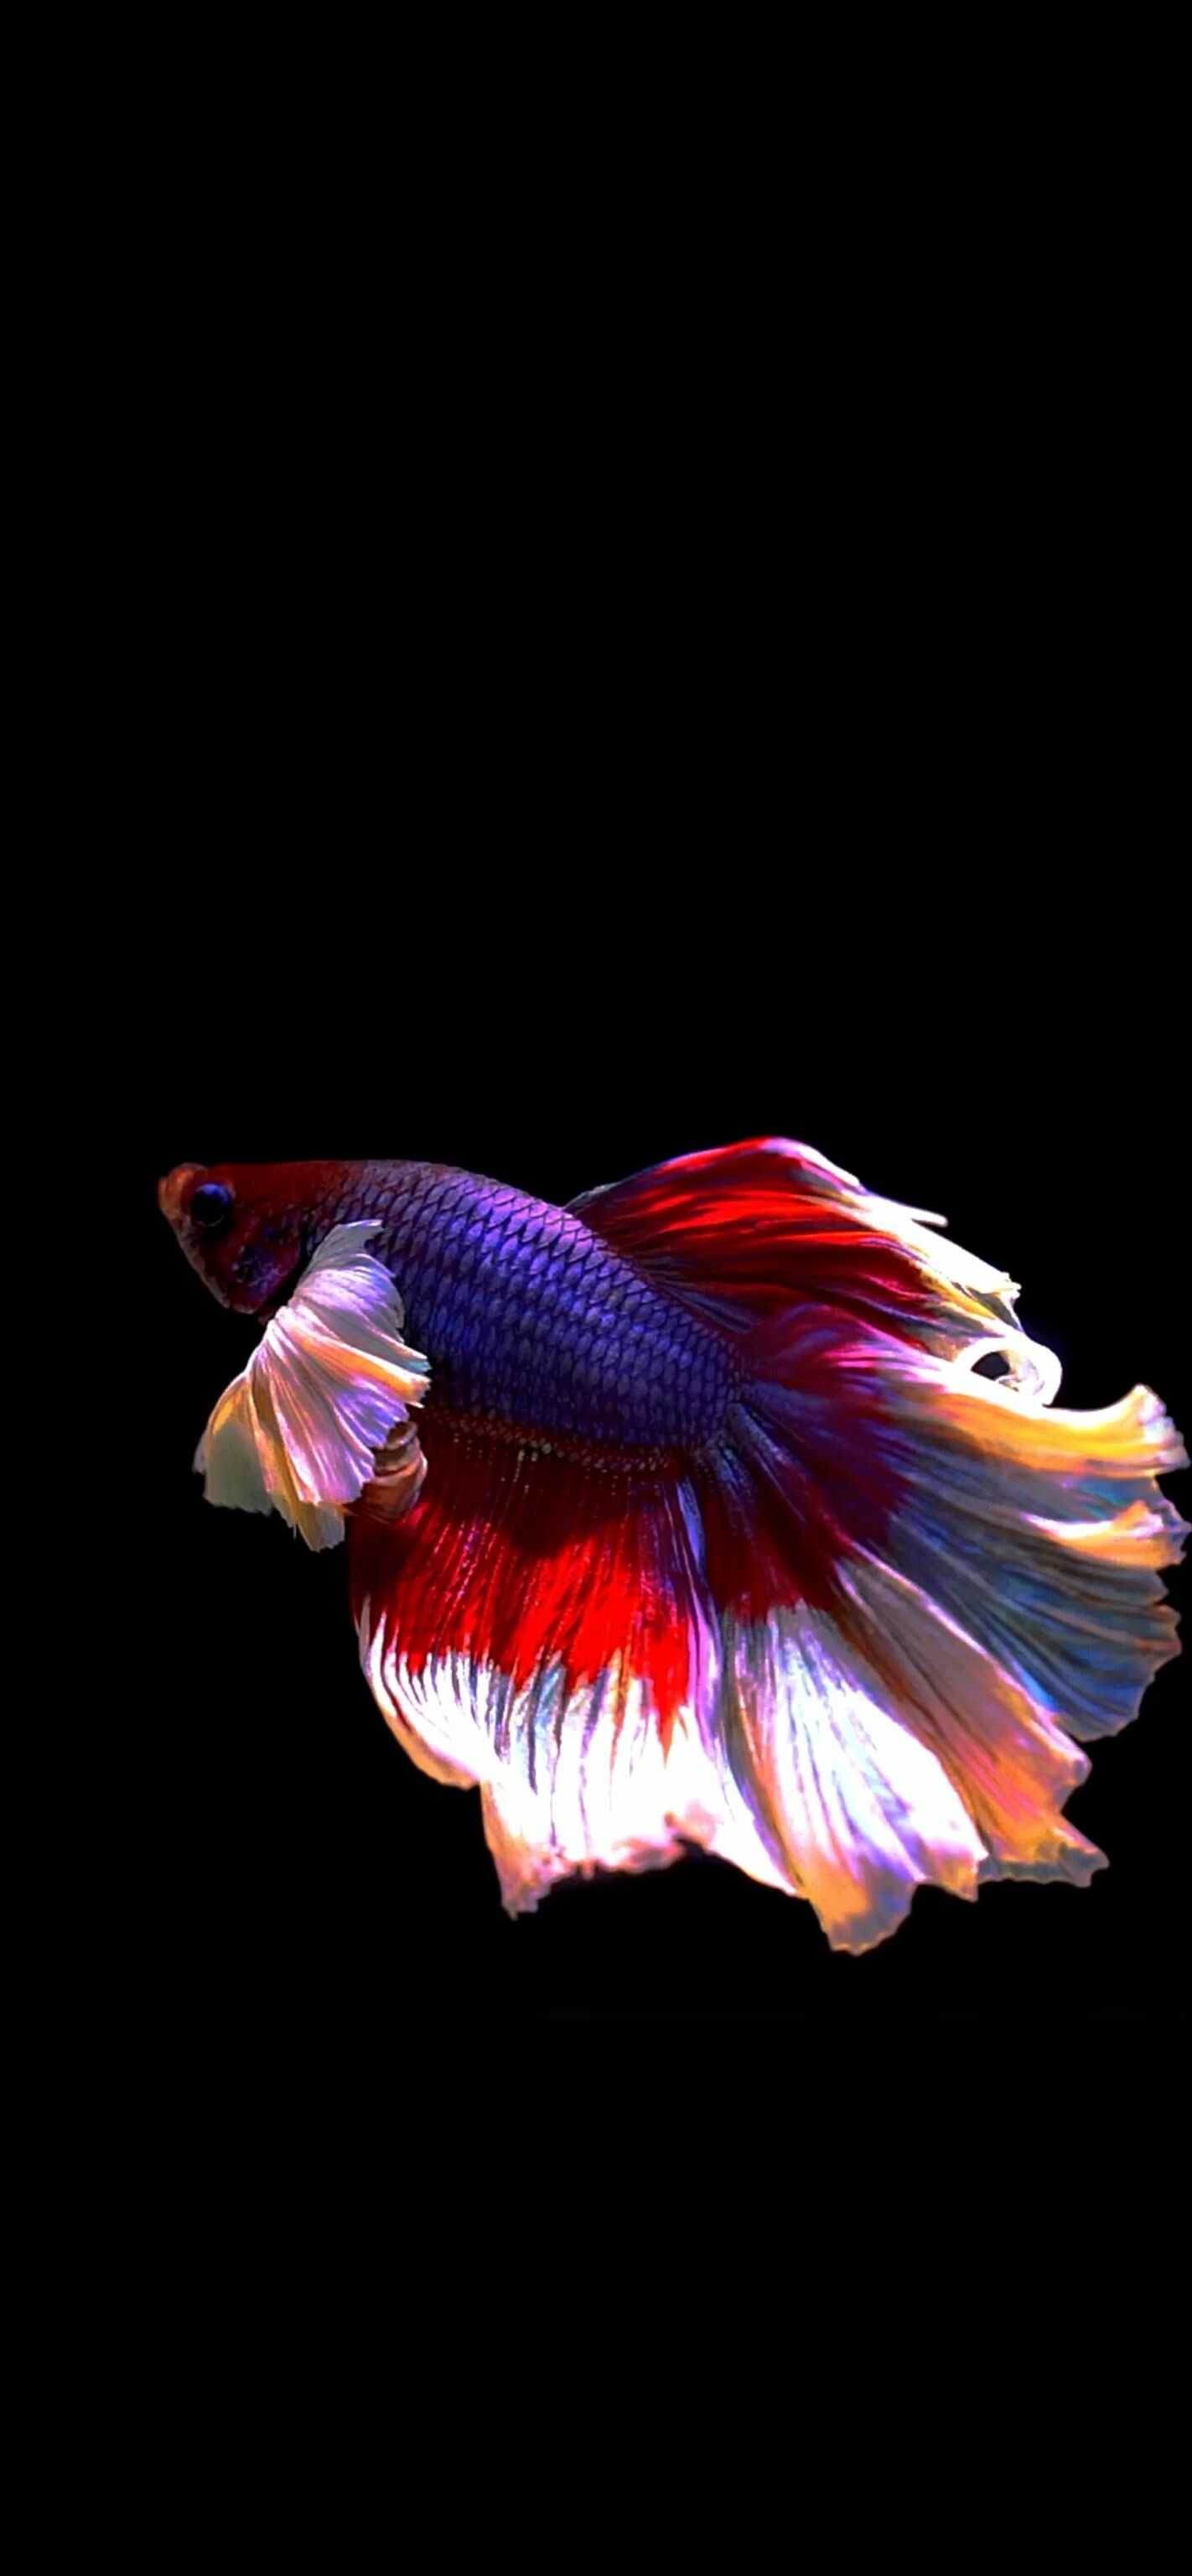 Fish: Betta, Aquatic vertebrates. 1430x3080 HD Wallpaper.